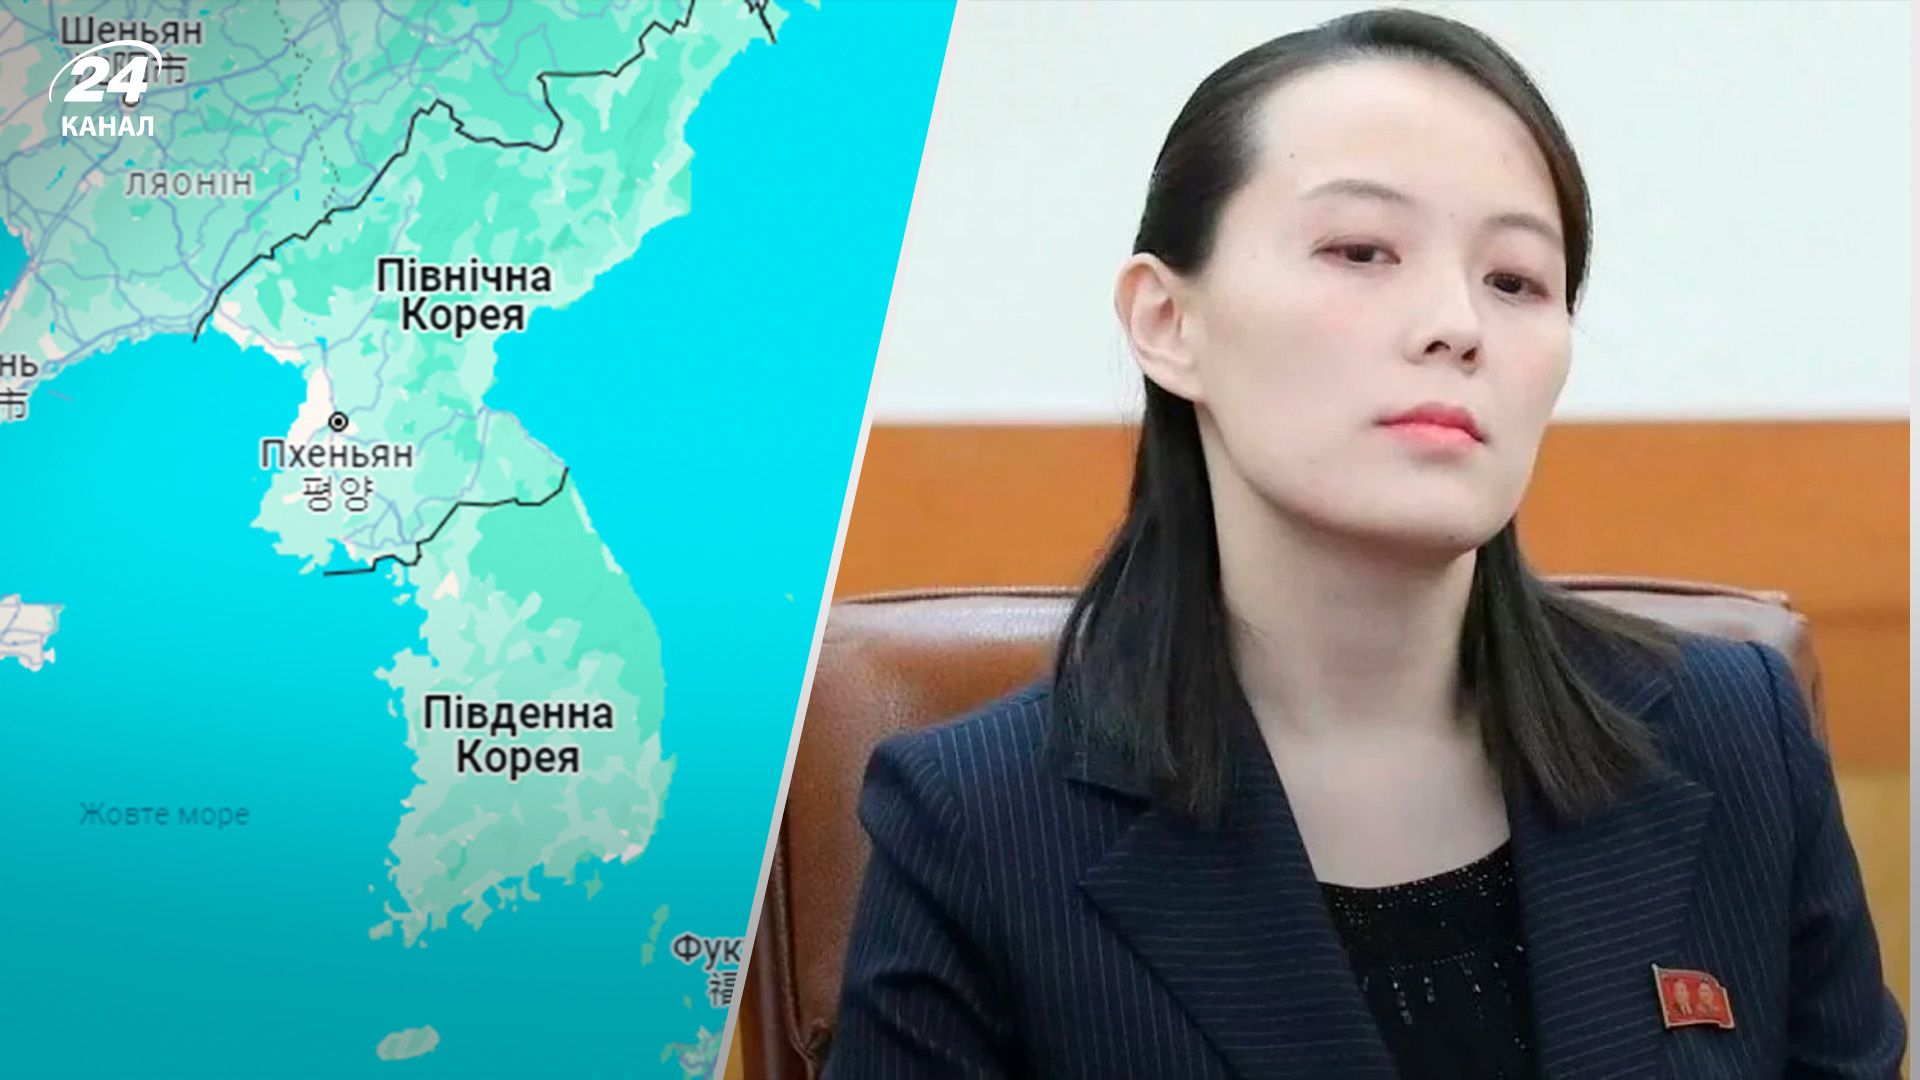 Сестра північнокорейського лідера Кім Йо Чжон застерегла Південну Корею від продовження військових навчань на кордоні із КНДР / Колаж 24 Каналу